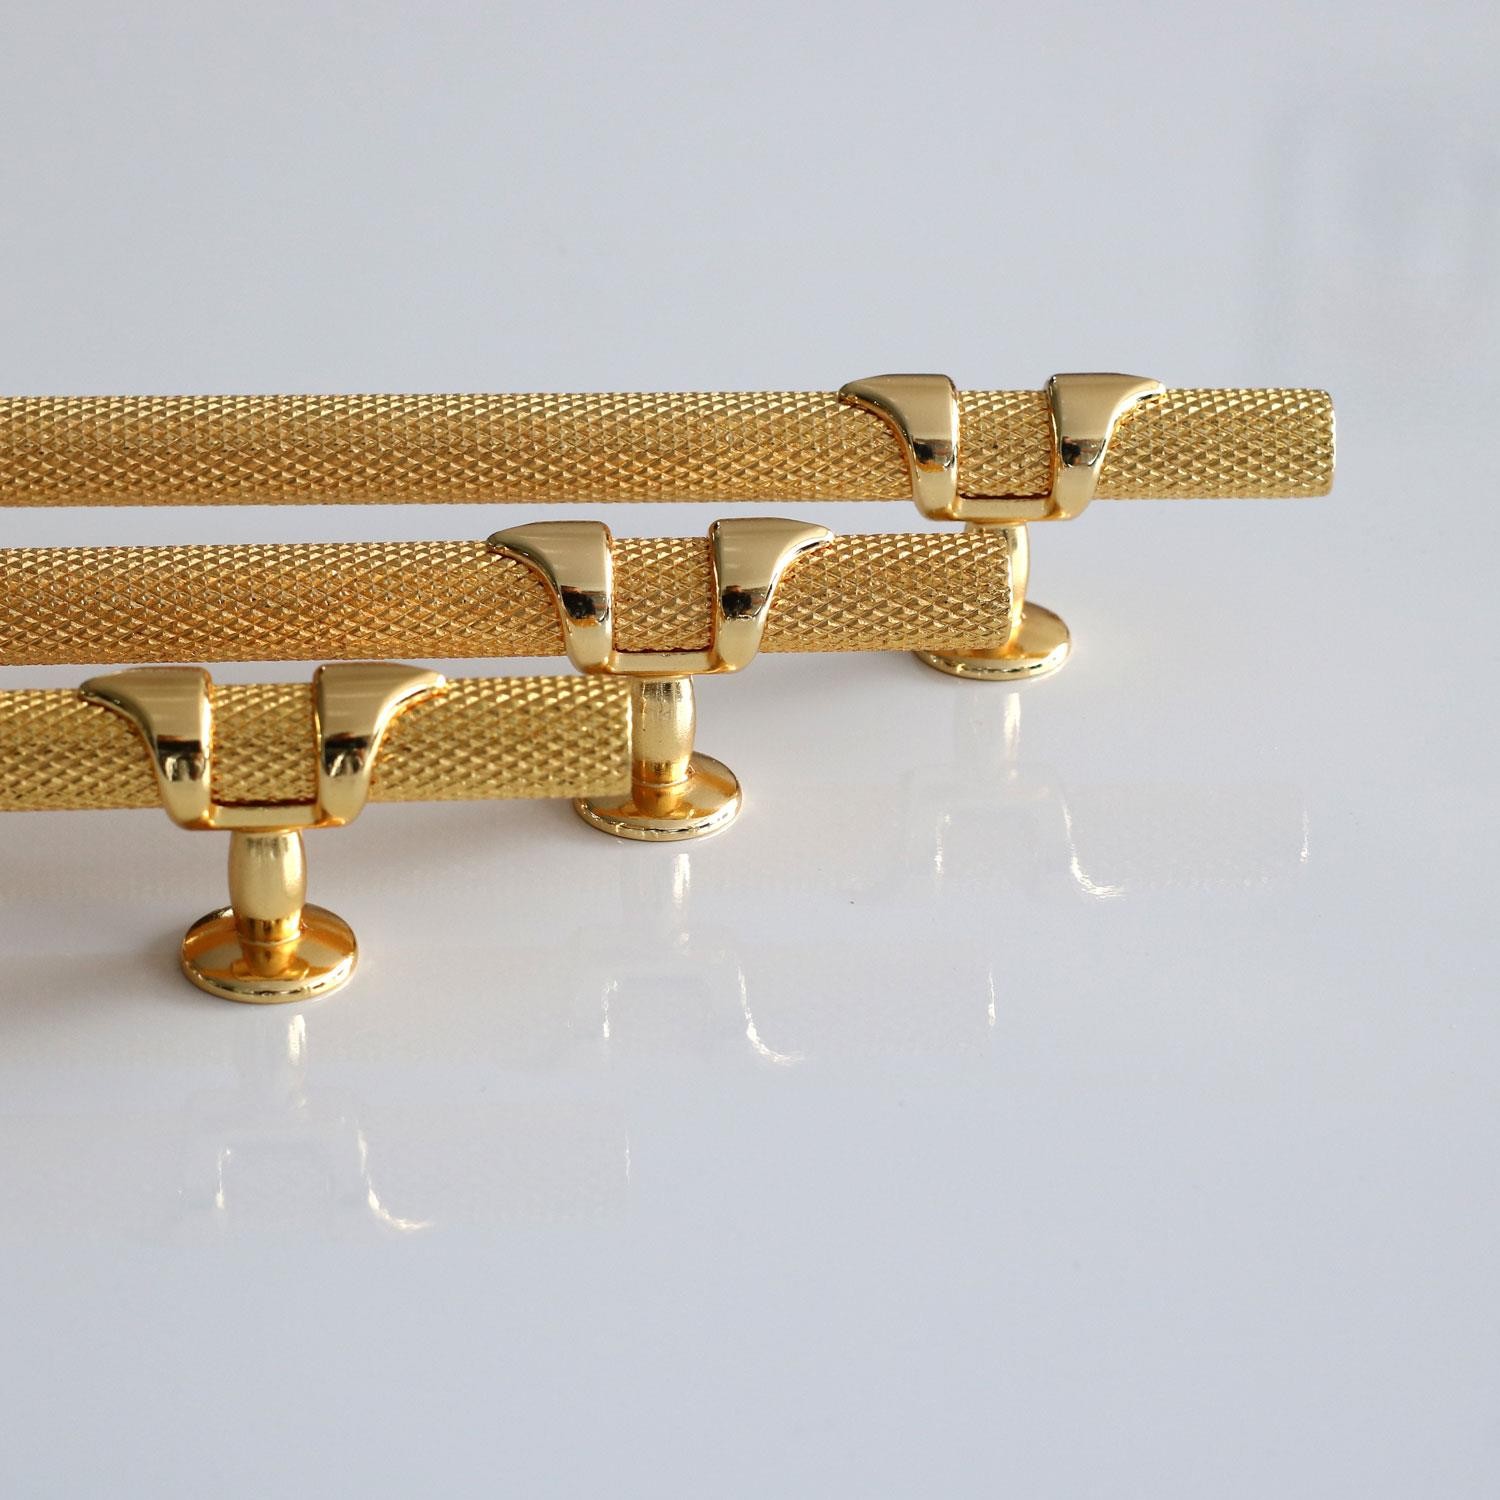 Burç Kulp 128 mm Gold Altın Renk Mobilya Çekmece Mutfak Dolabı Dolap Kulpları Kapak Kulpu Kulb Metal